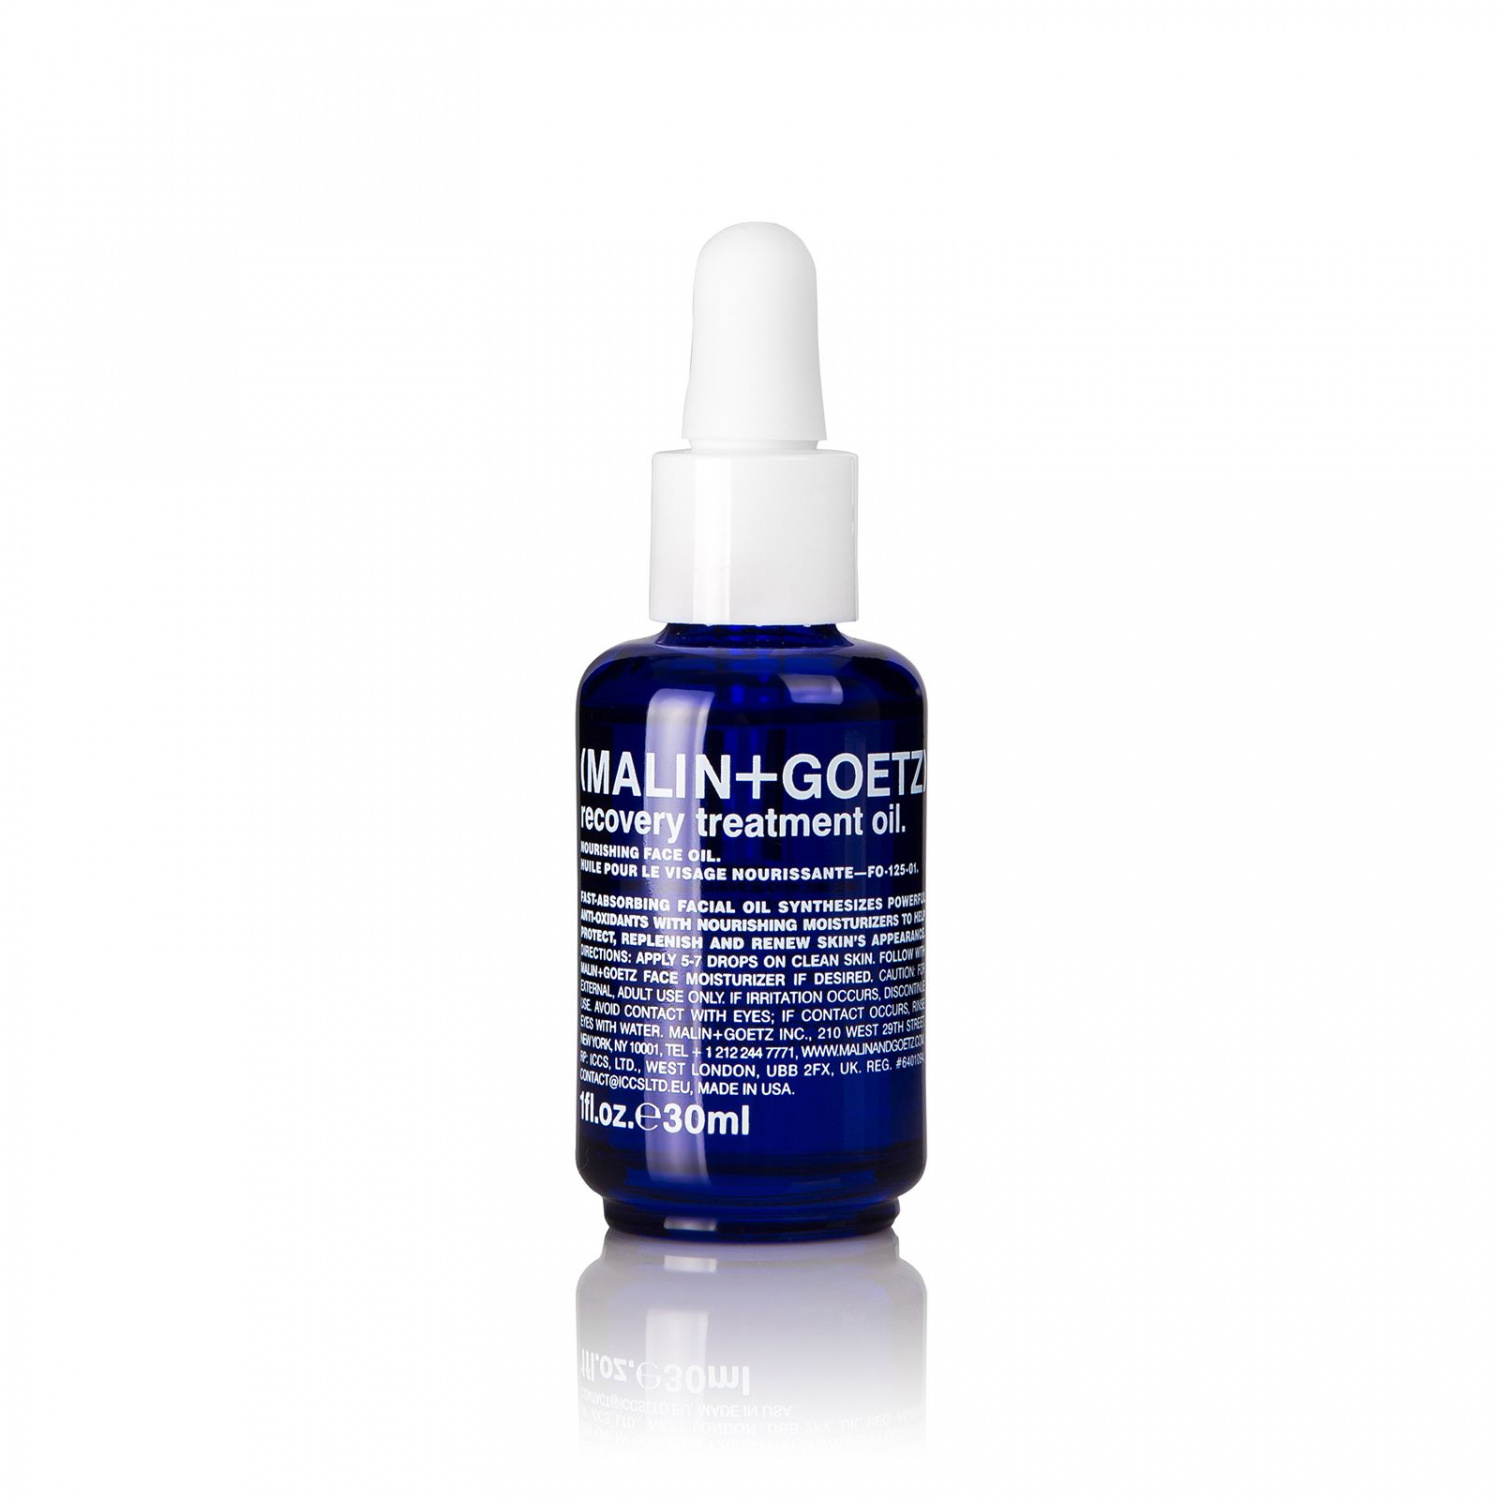 MALIN+GOETZ Recovery Treatment Oil 30 ml. - интернет-магазин профессиональной косметики Spadream, изображение 28341